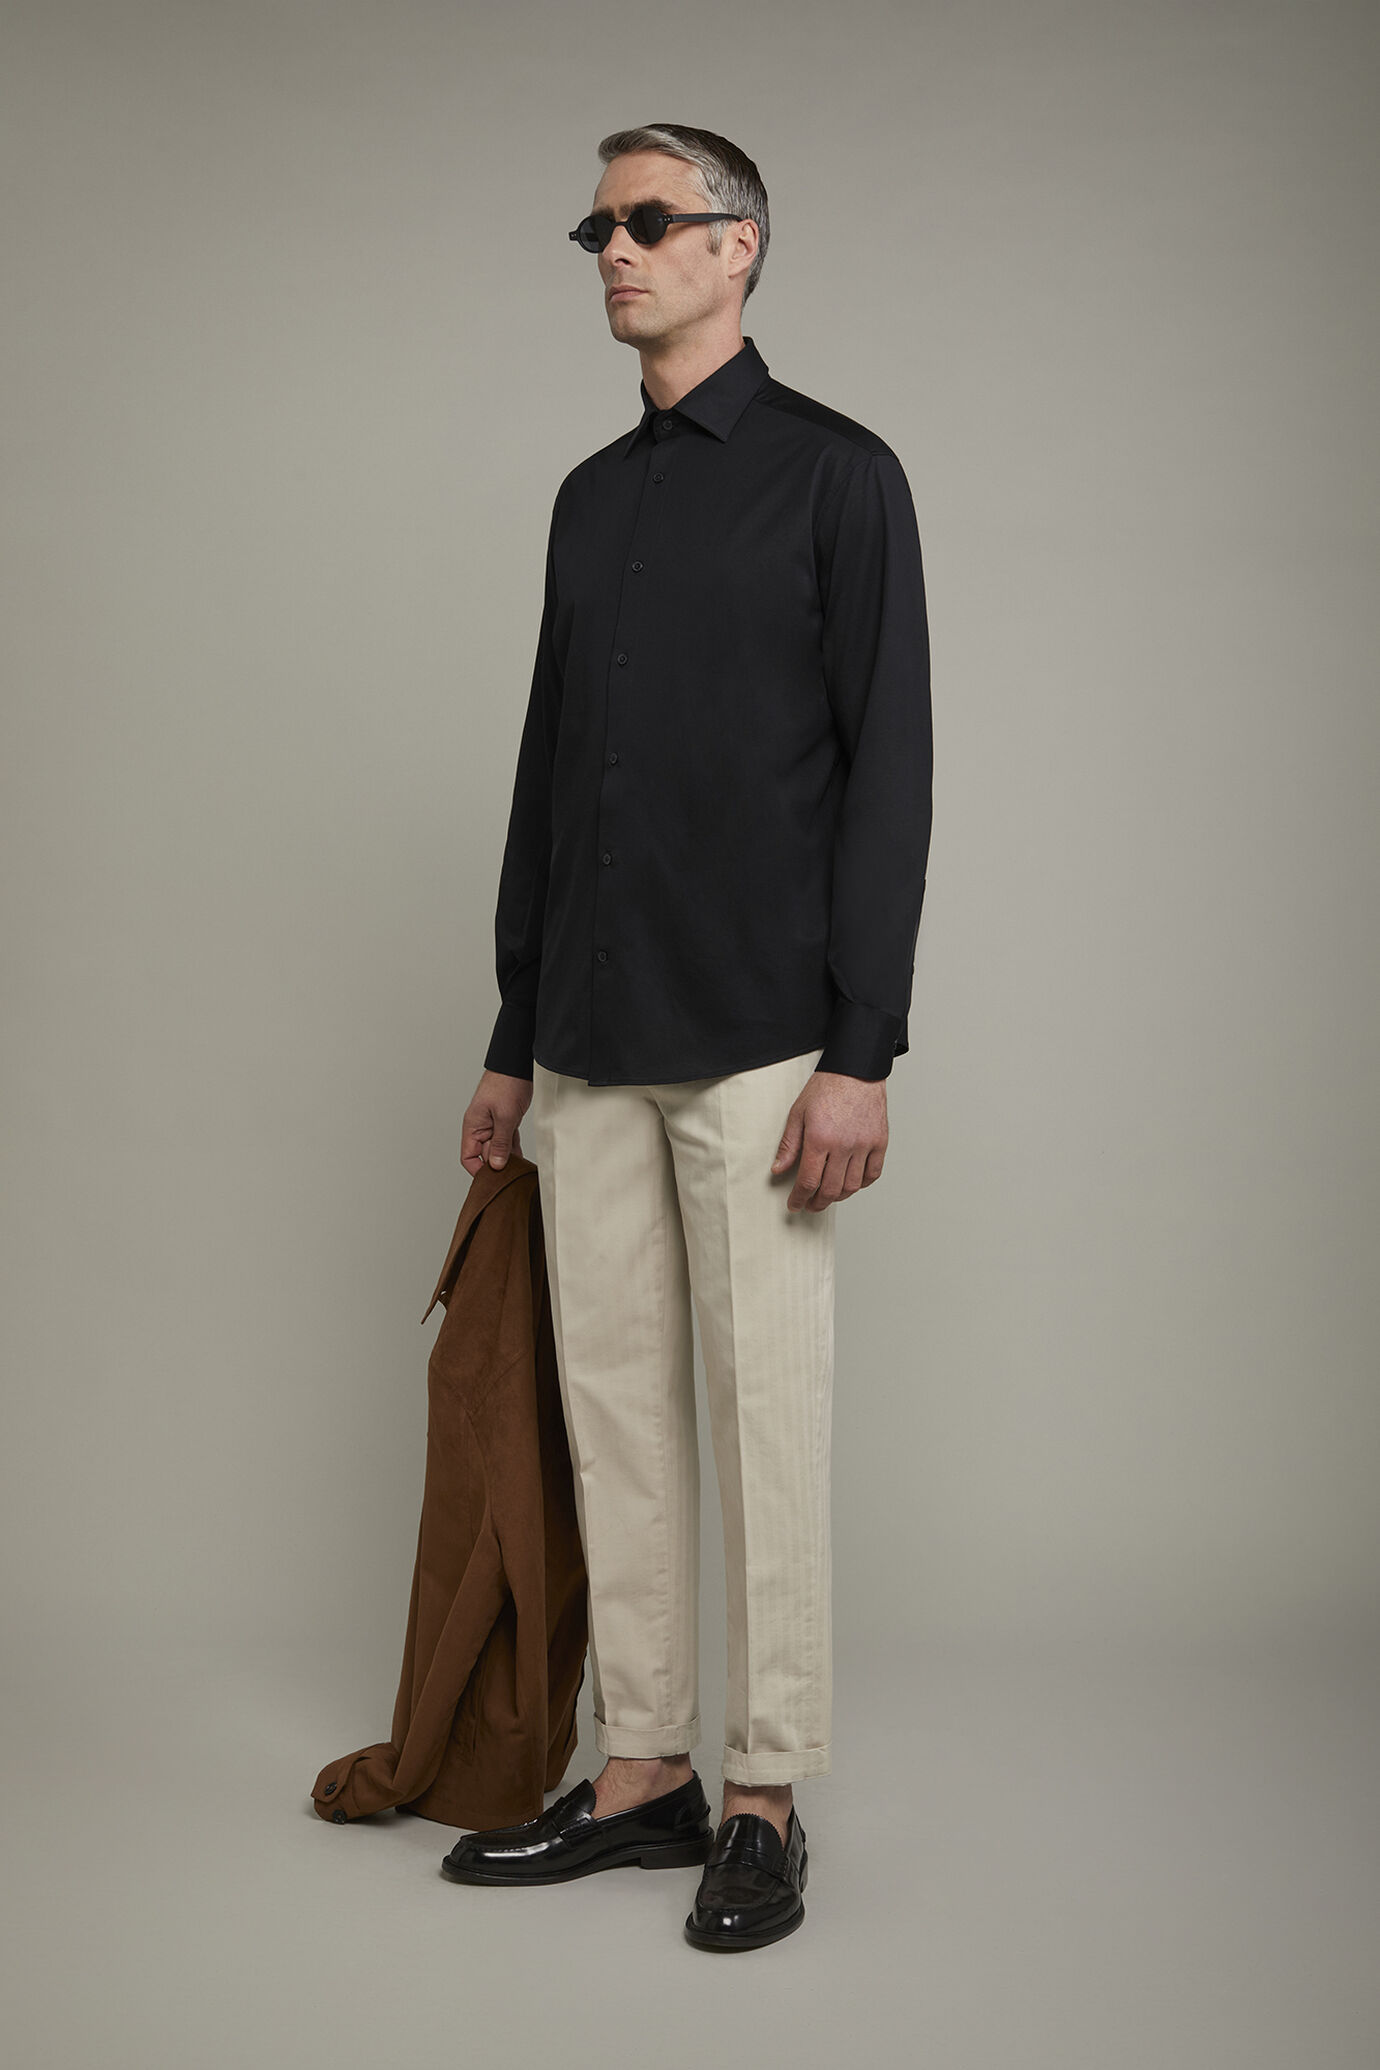 Polo camicia uomo a manica lunga con collo classico 100% cotone piquet regular fit image number 1